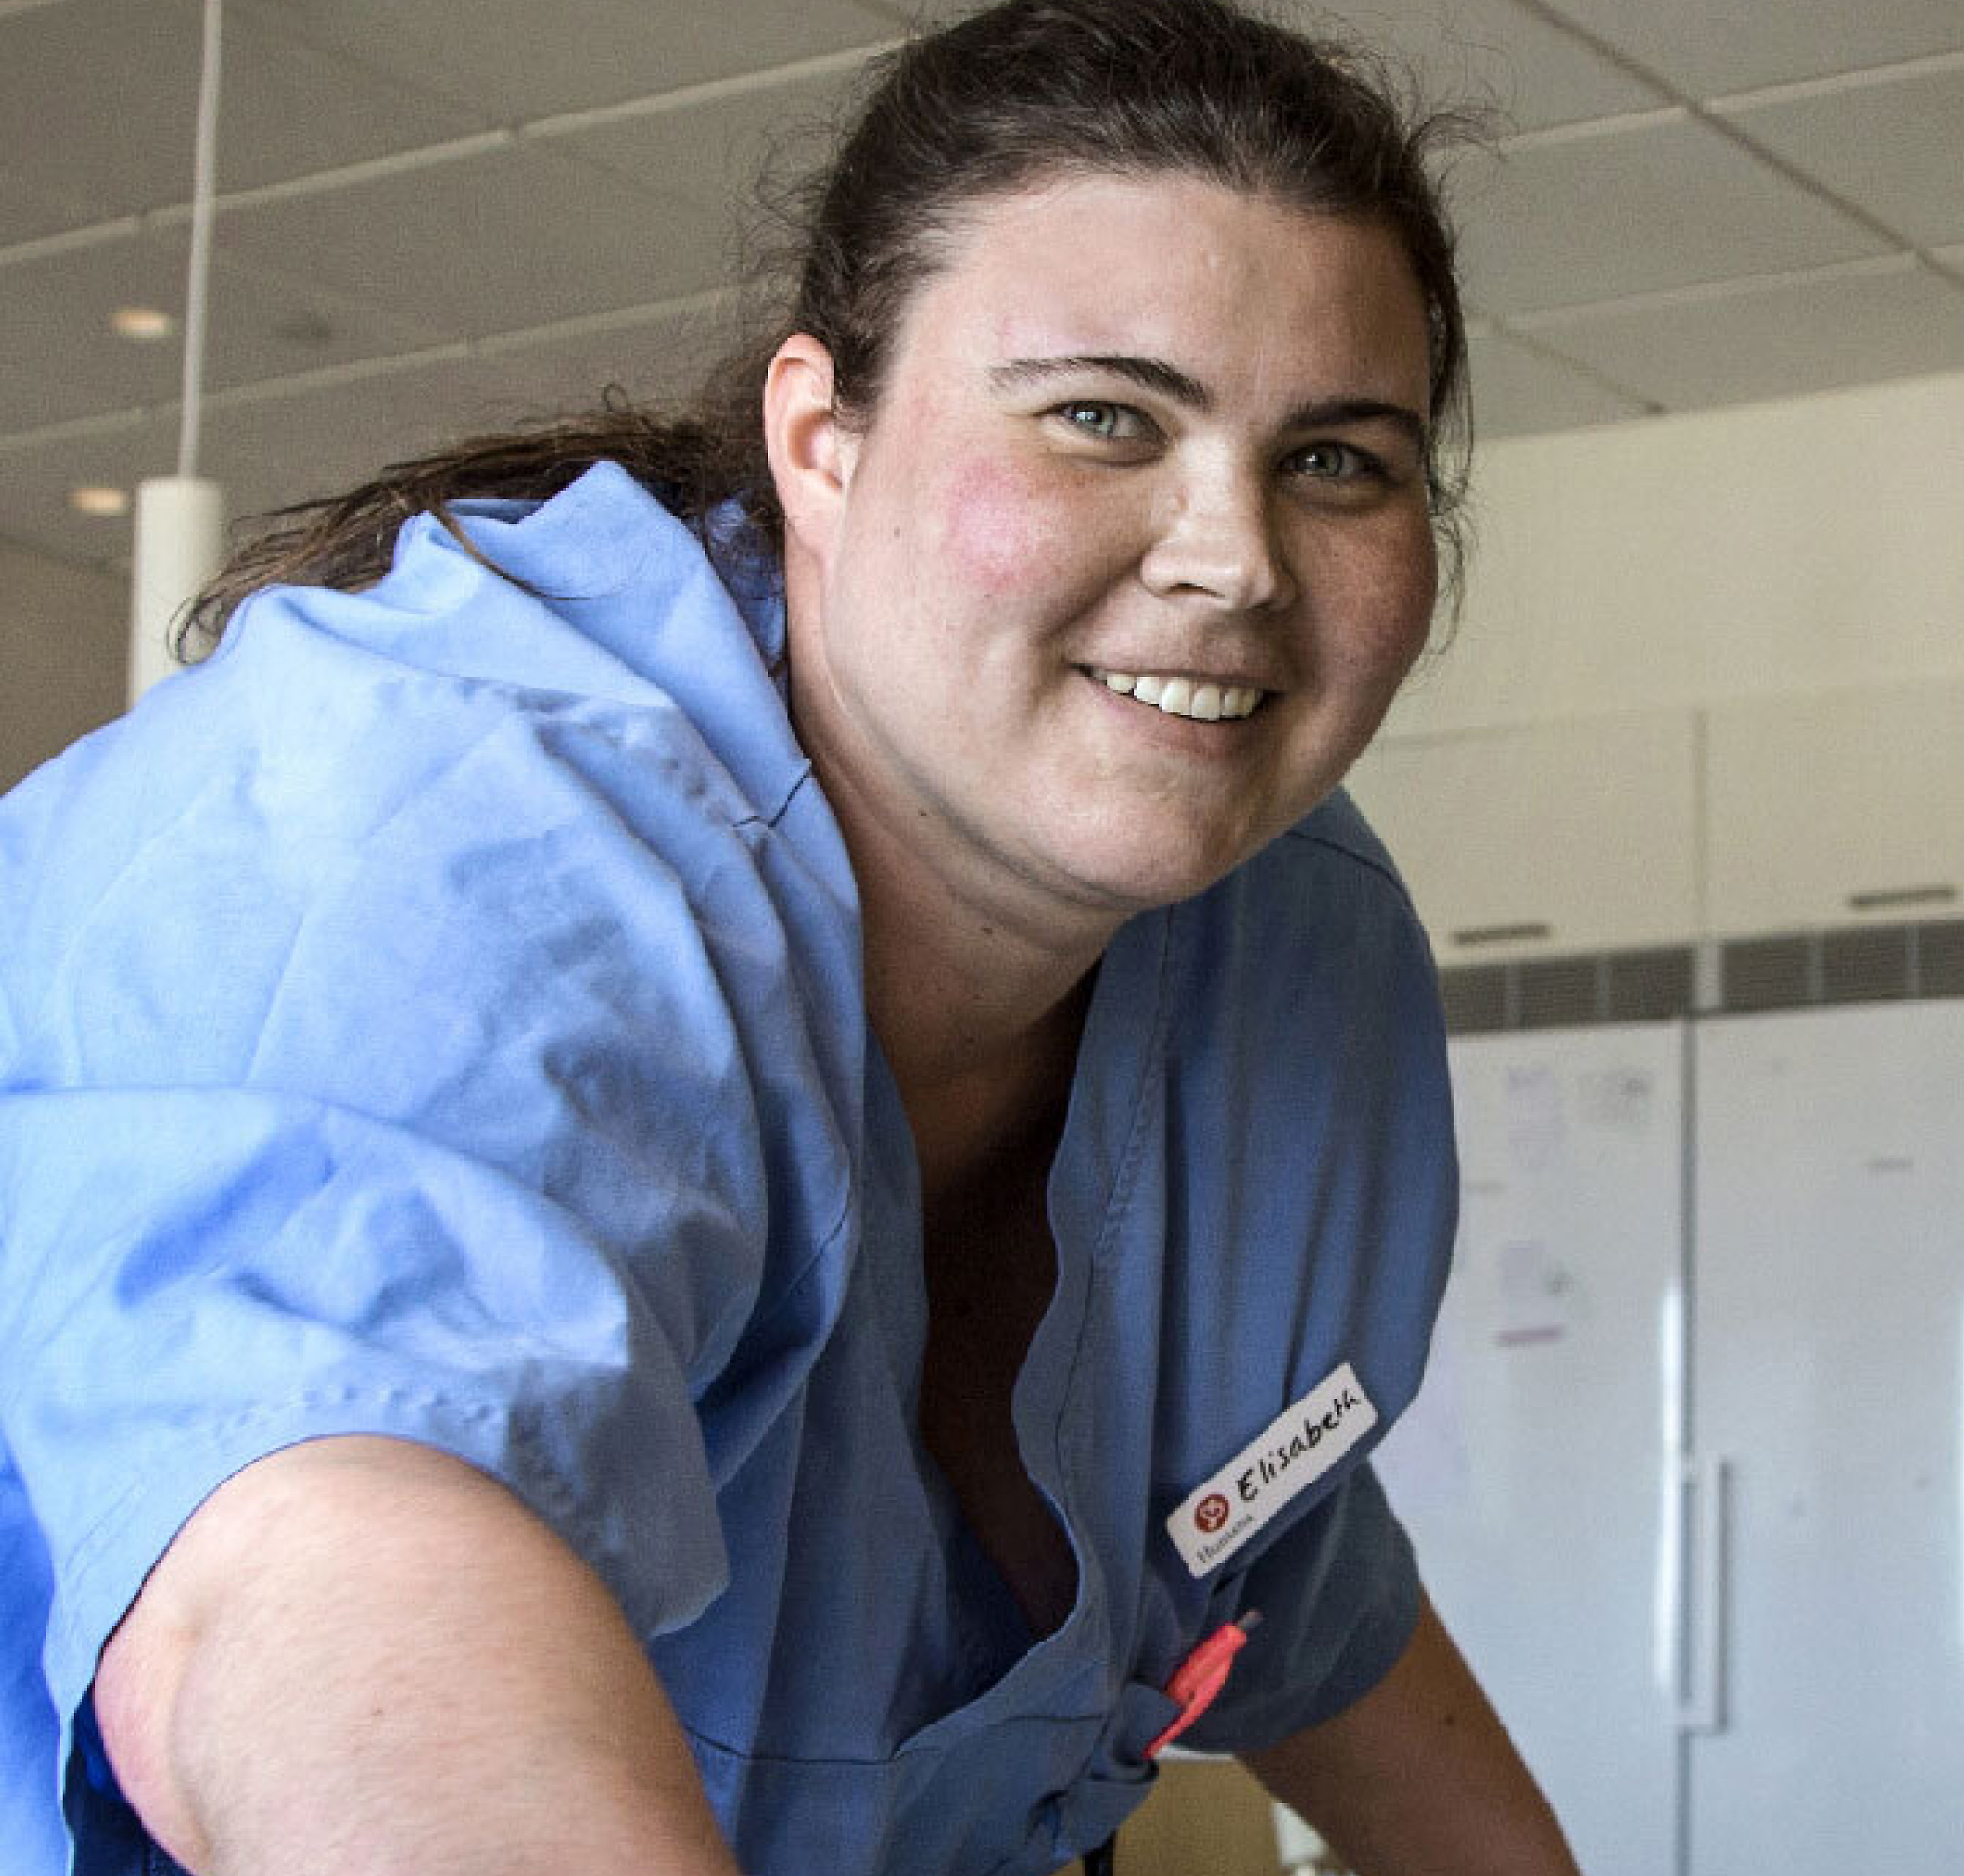 Una enfermera con la etiqueta "elizabeth" sonríe con un uniforme azul, en un hospital luminoso y amplio.